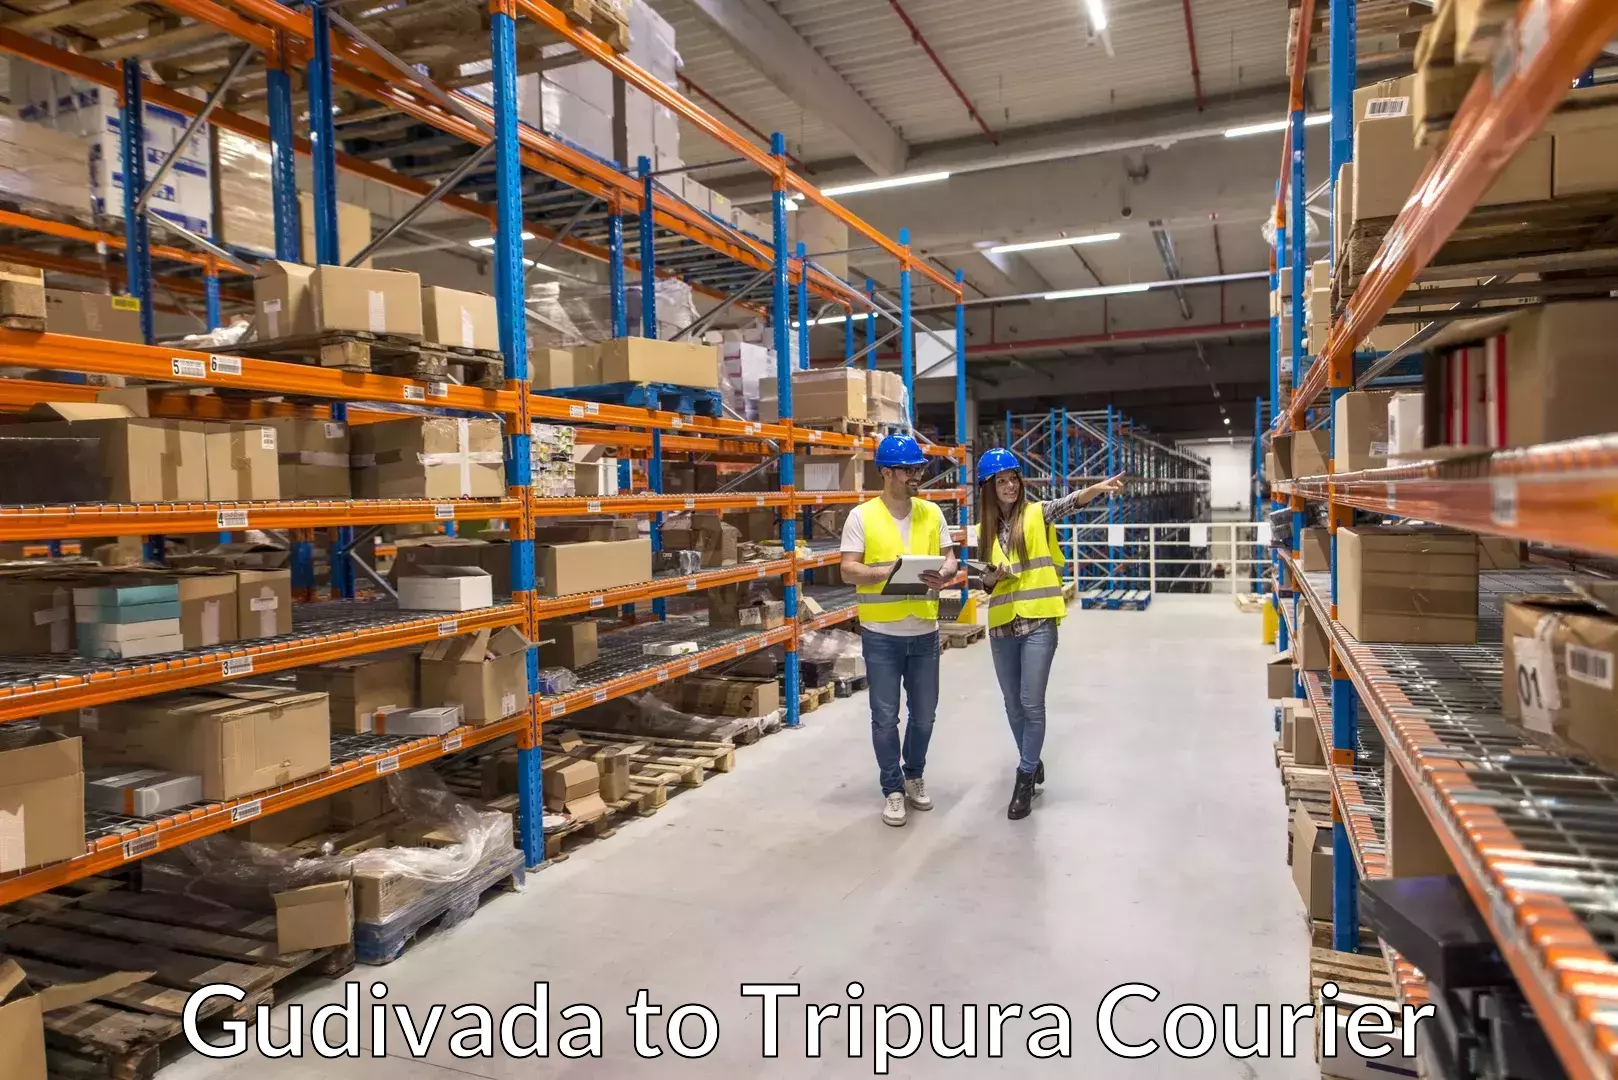 Trusted furniture transport Gudivada to Amarpur